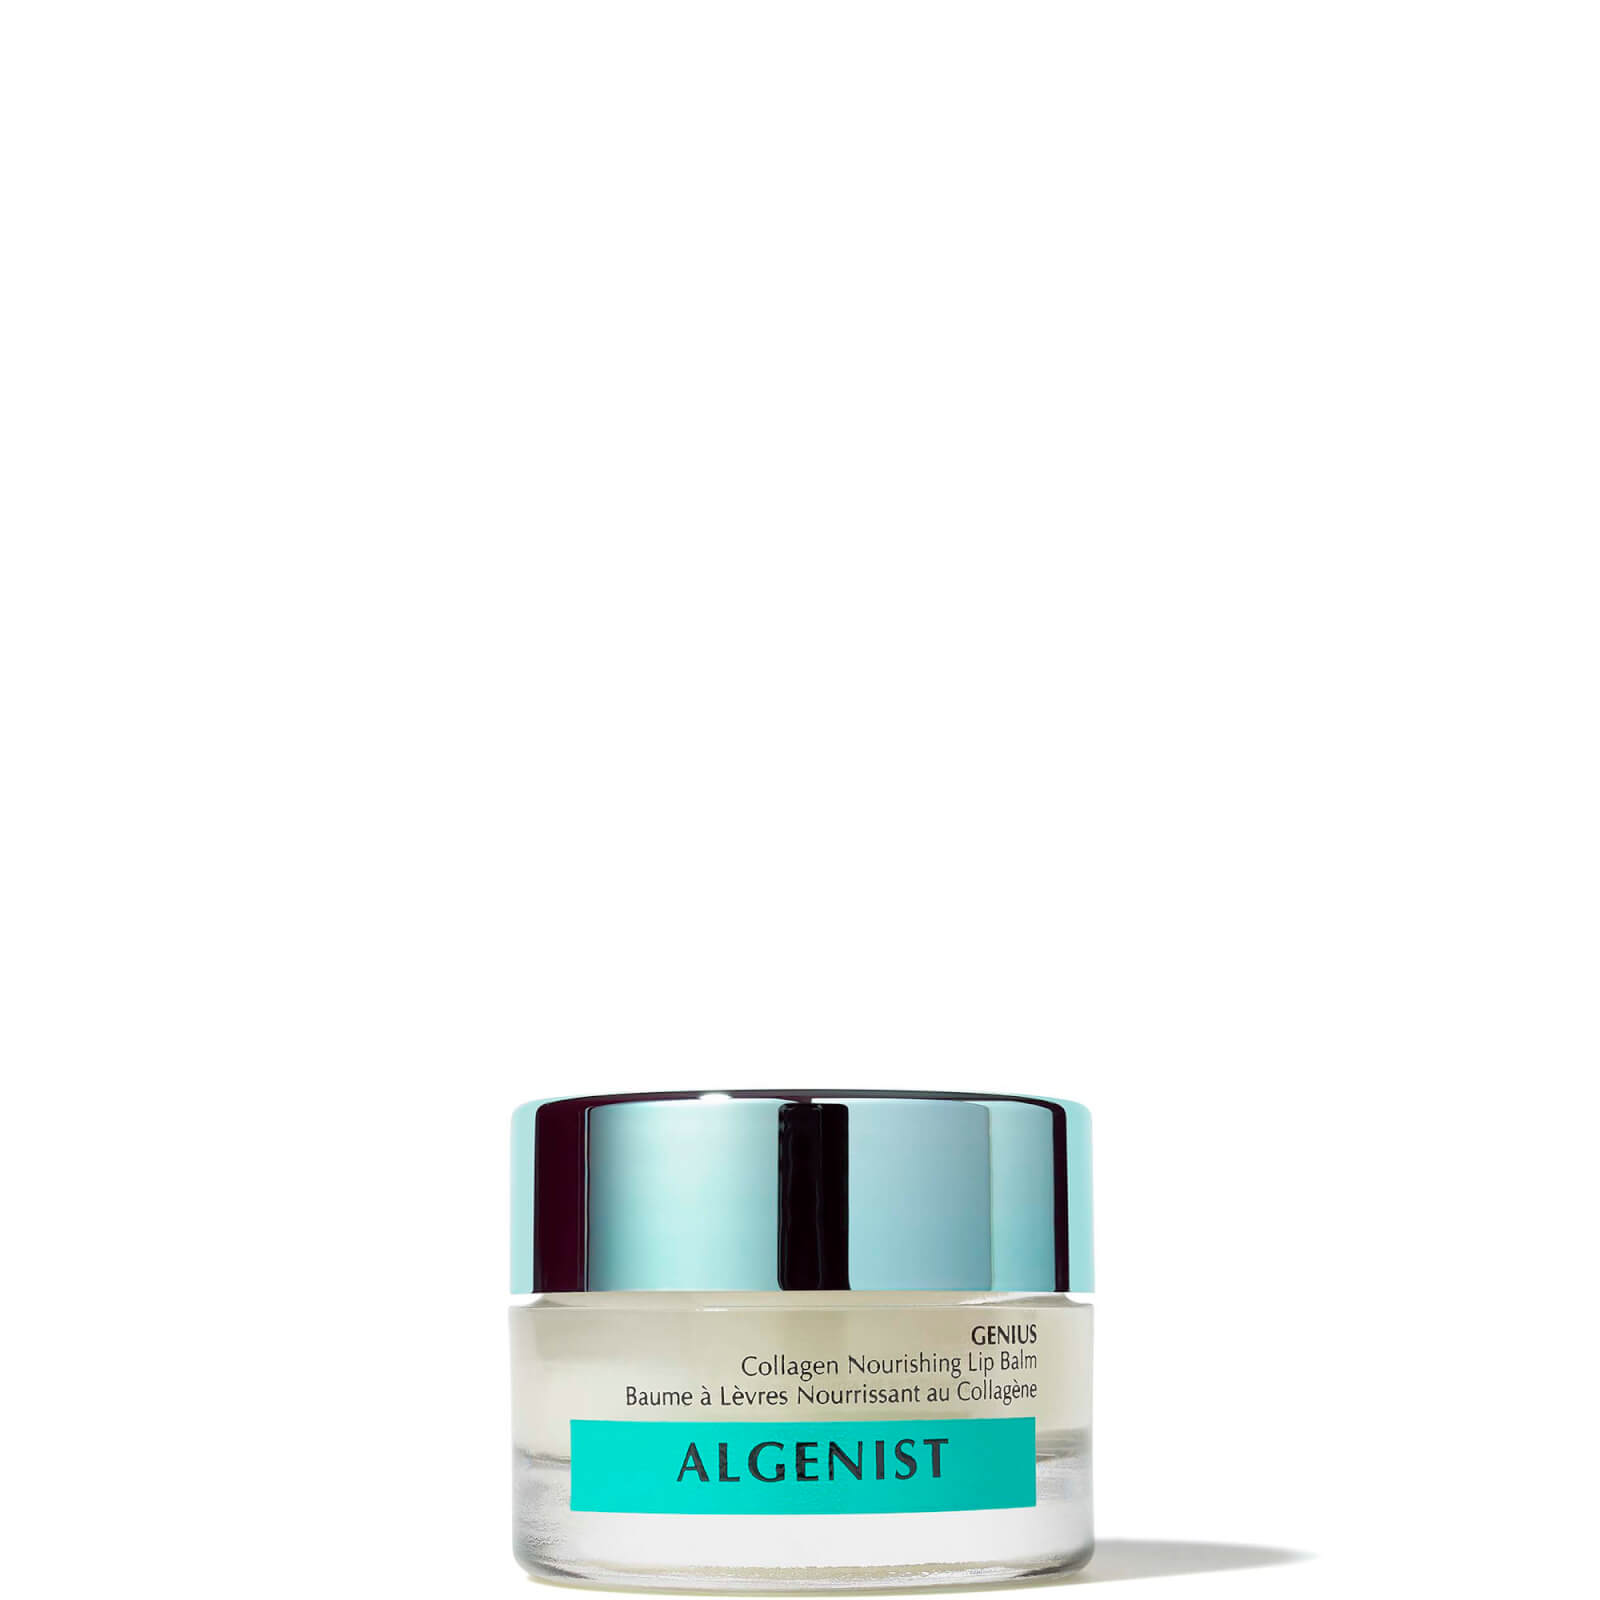 Algneist Genius Collagen Nourishing Lip Balm 10g